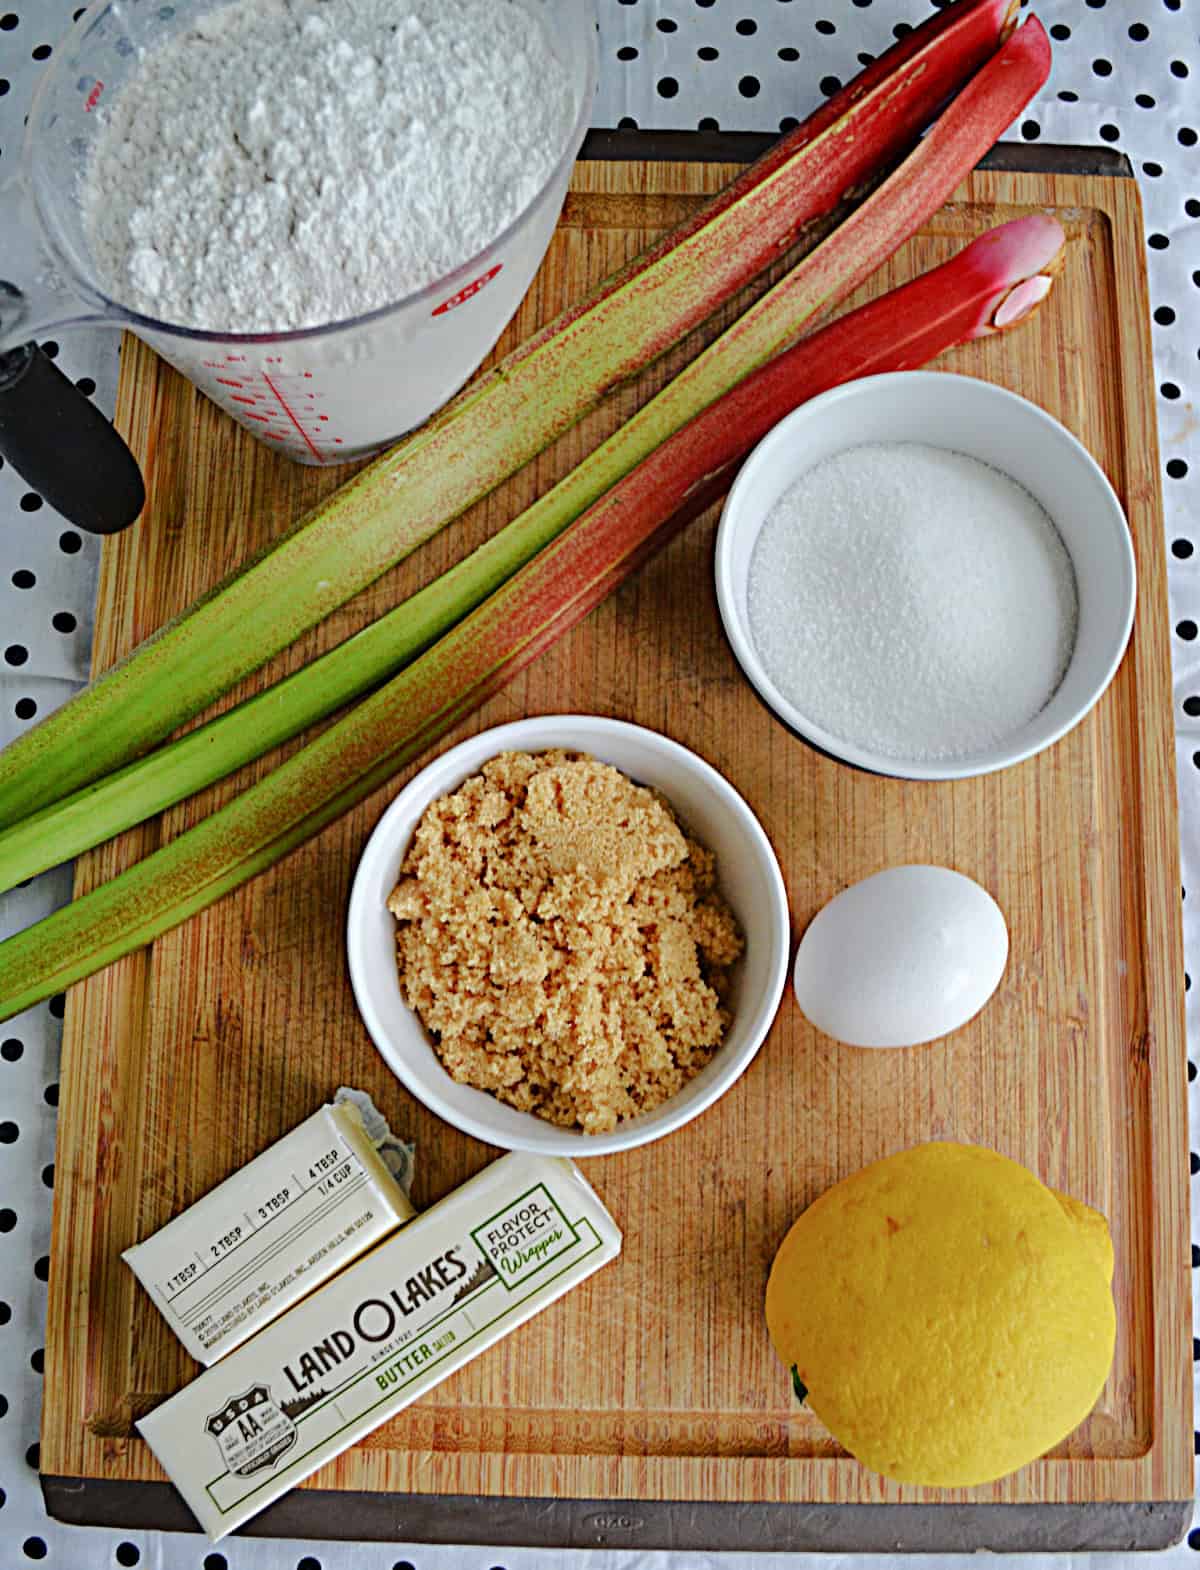 Ingredients to make Lemon Rhubarb Cookies.